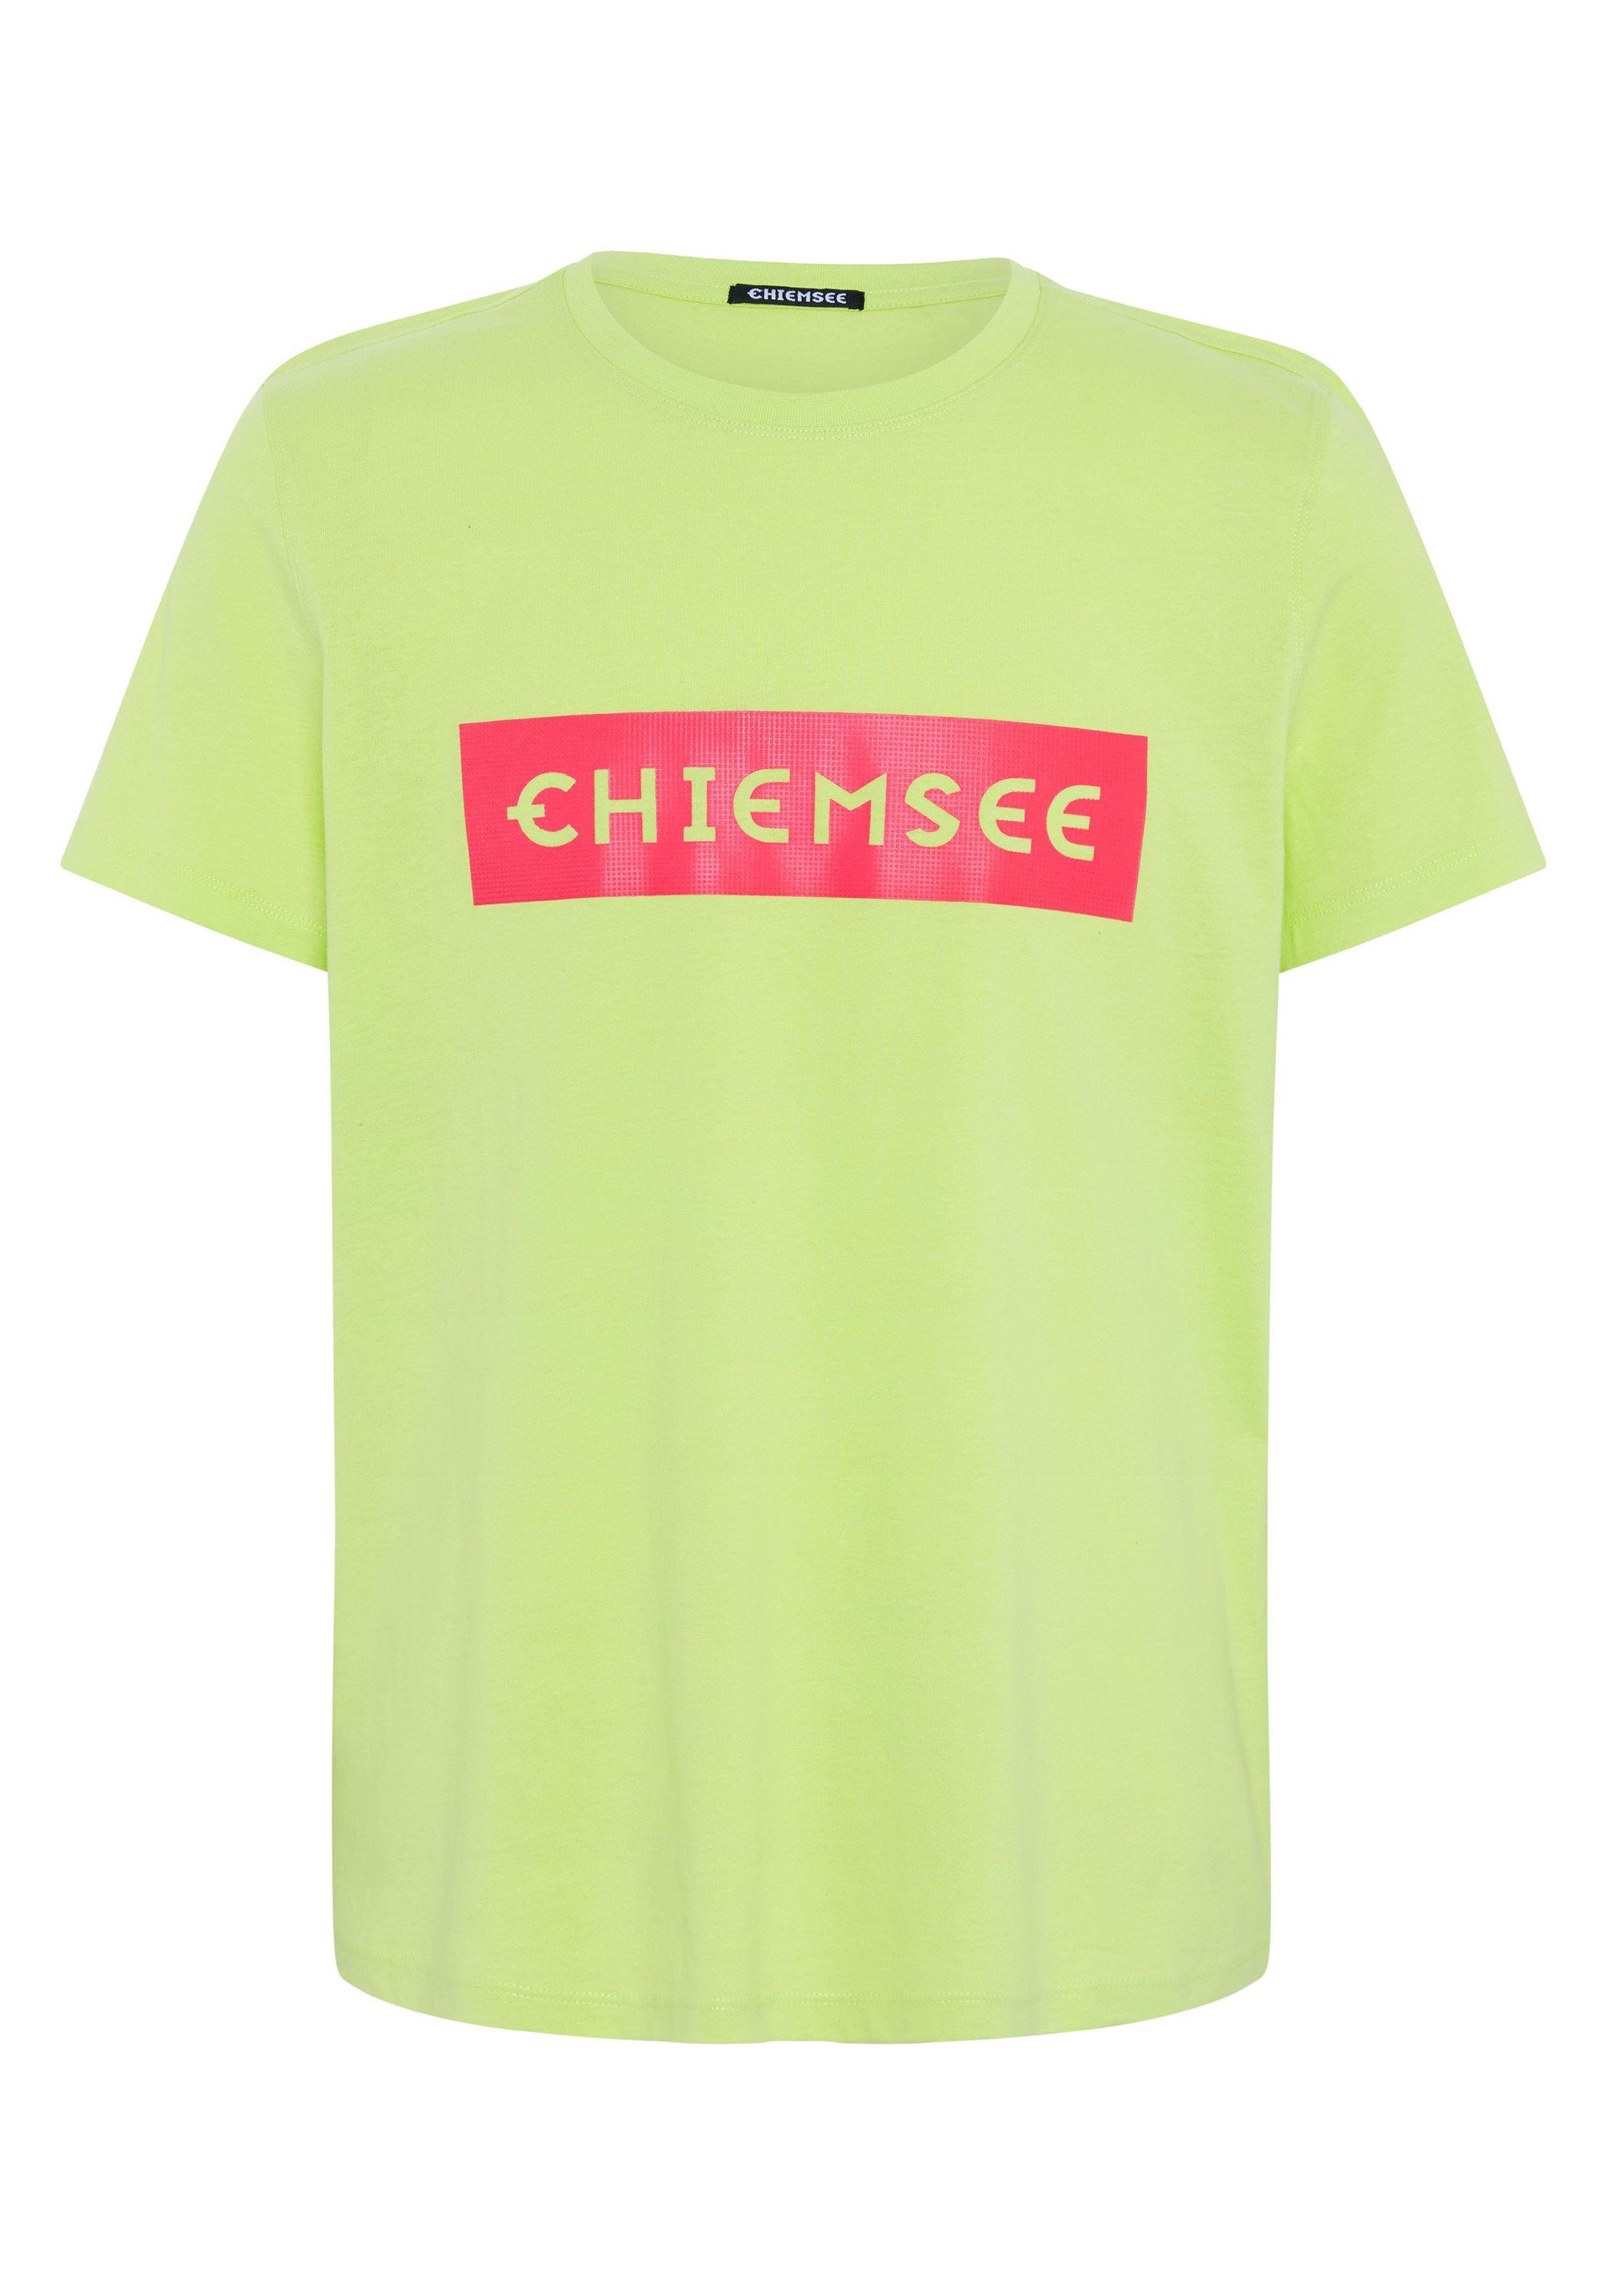 Chiemsee Print-Shirt T-Shirt mit plakativem Markenschriftzug 1 13-0535 Sharp Green